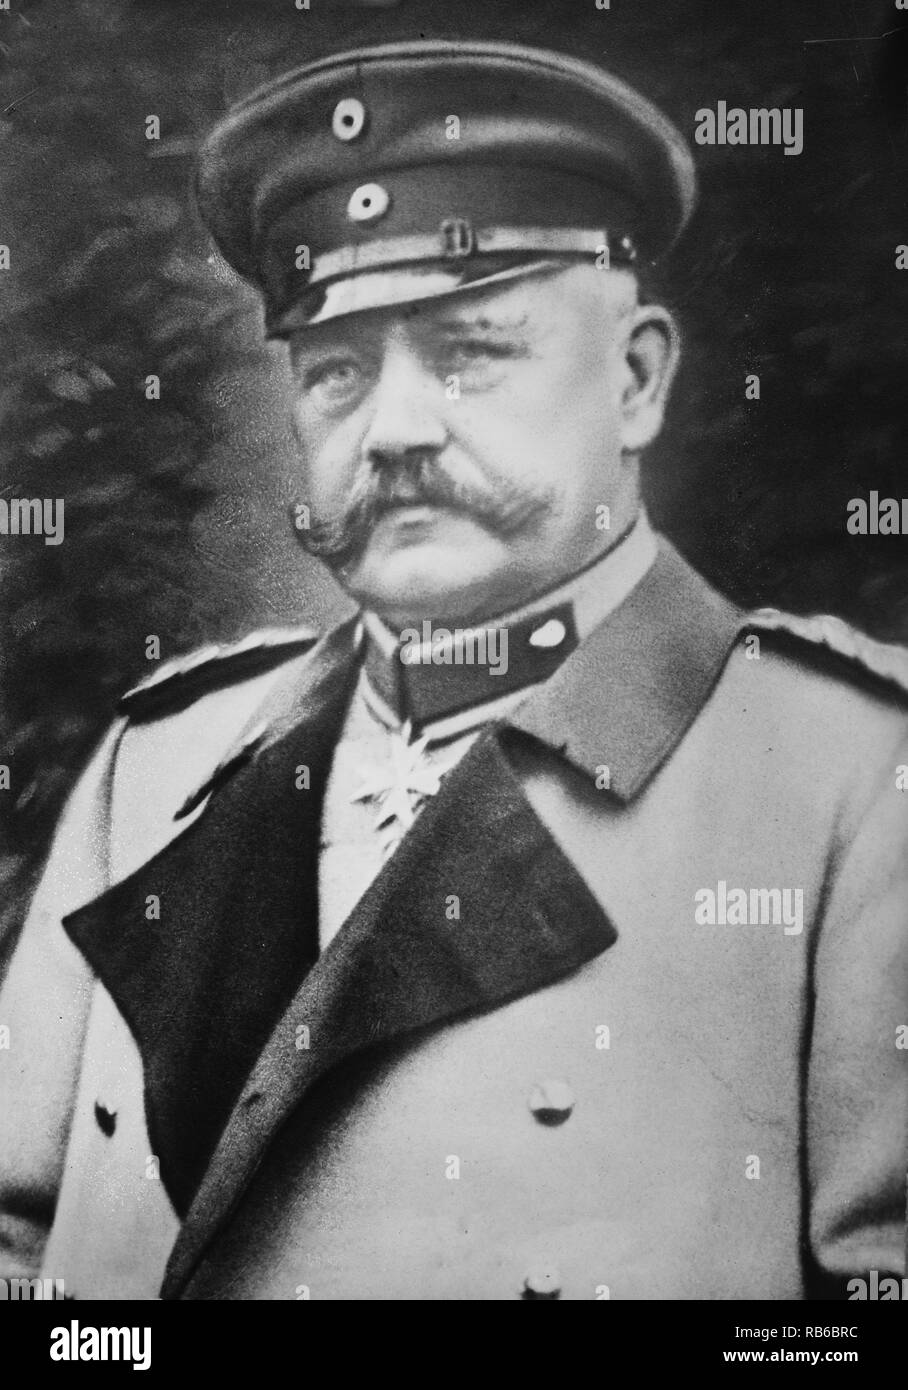 Paul von Hindenburg, General Paul Ludwig Hans Anton von Beneckendorff und von Hindenburg (Paul von Hindenburg) (1847 - 1934) fue un mariscal de campo (Generalfeldmarschall) y estadista que mandó al ejército alemán durante la segunda mitad de la I Guerra Mundial. Foto de stock